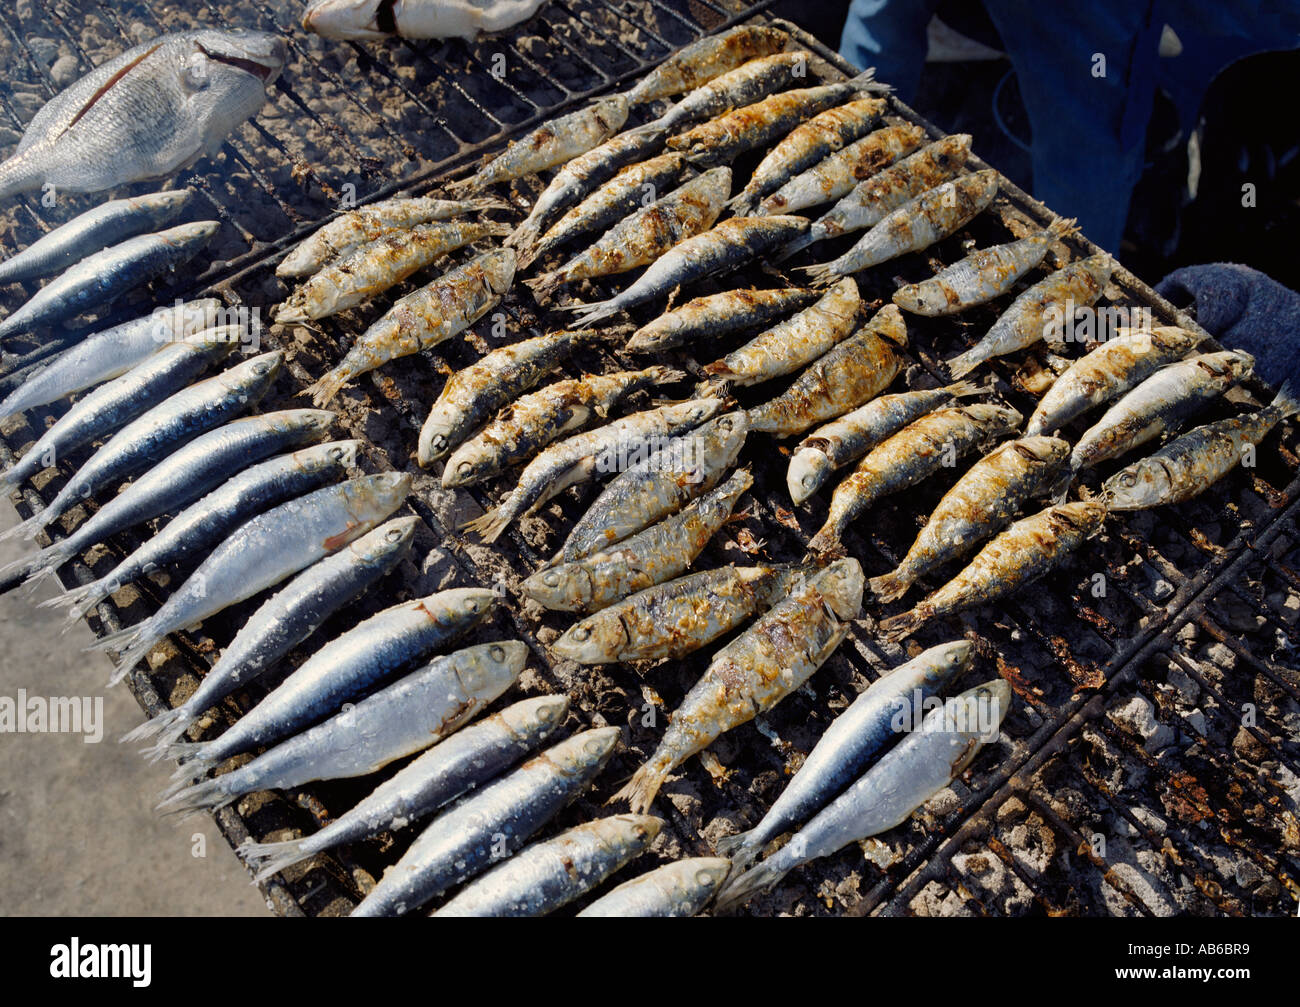 Il Portogallo, Algarve, Portimão, sardine sulla griglia a carbone Foto Stock